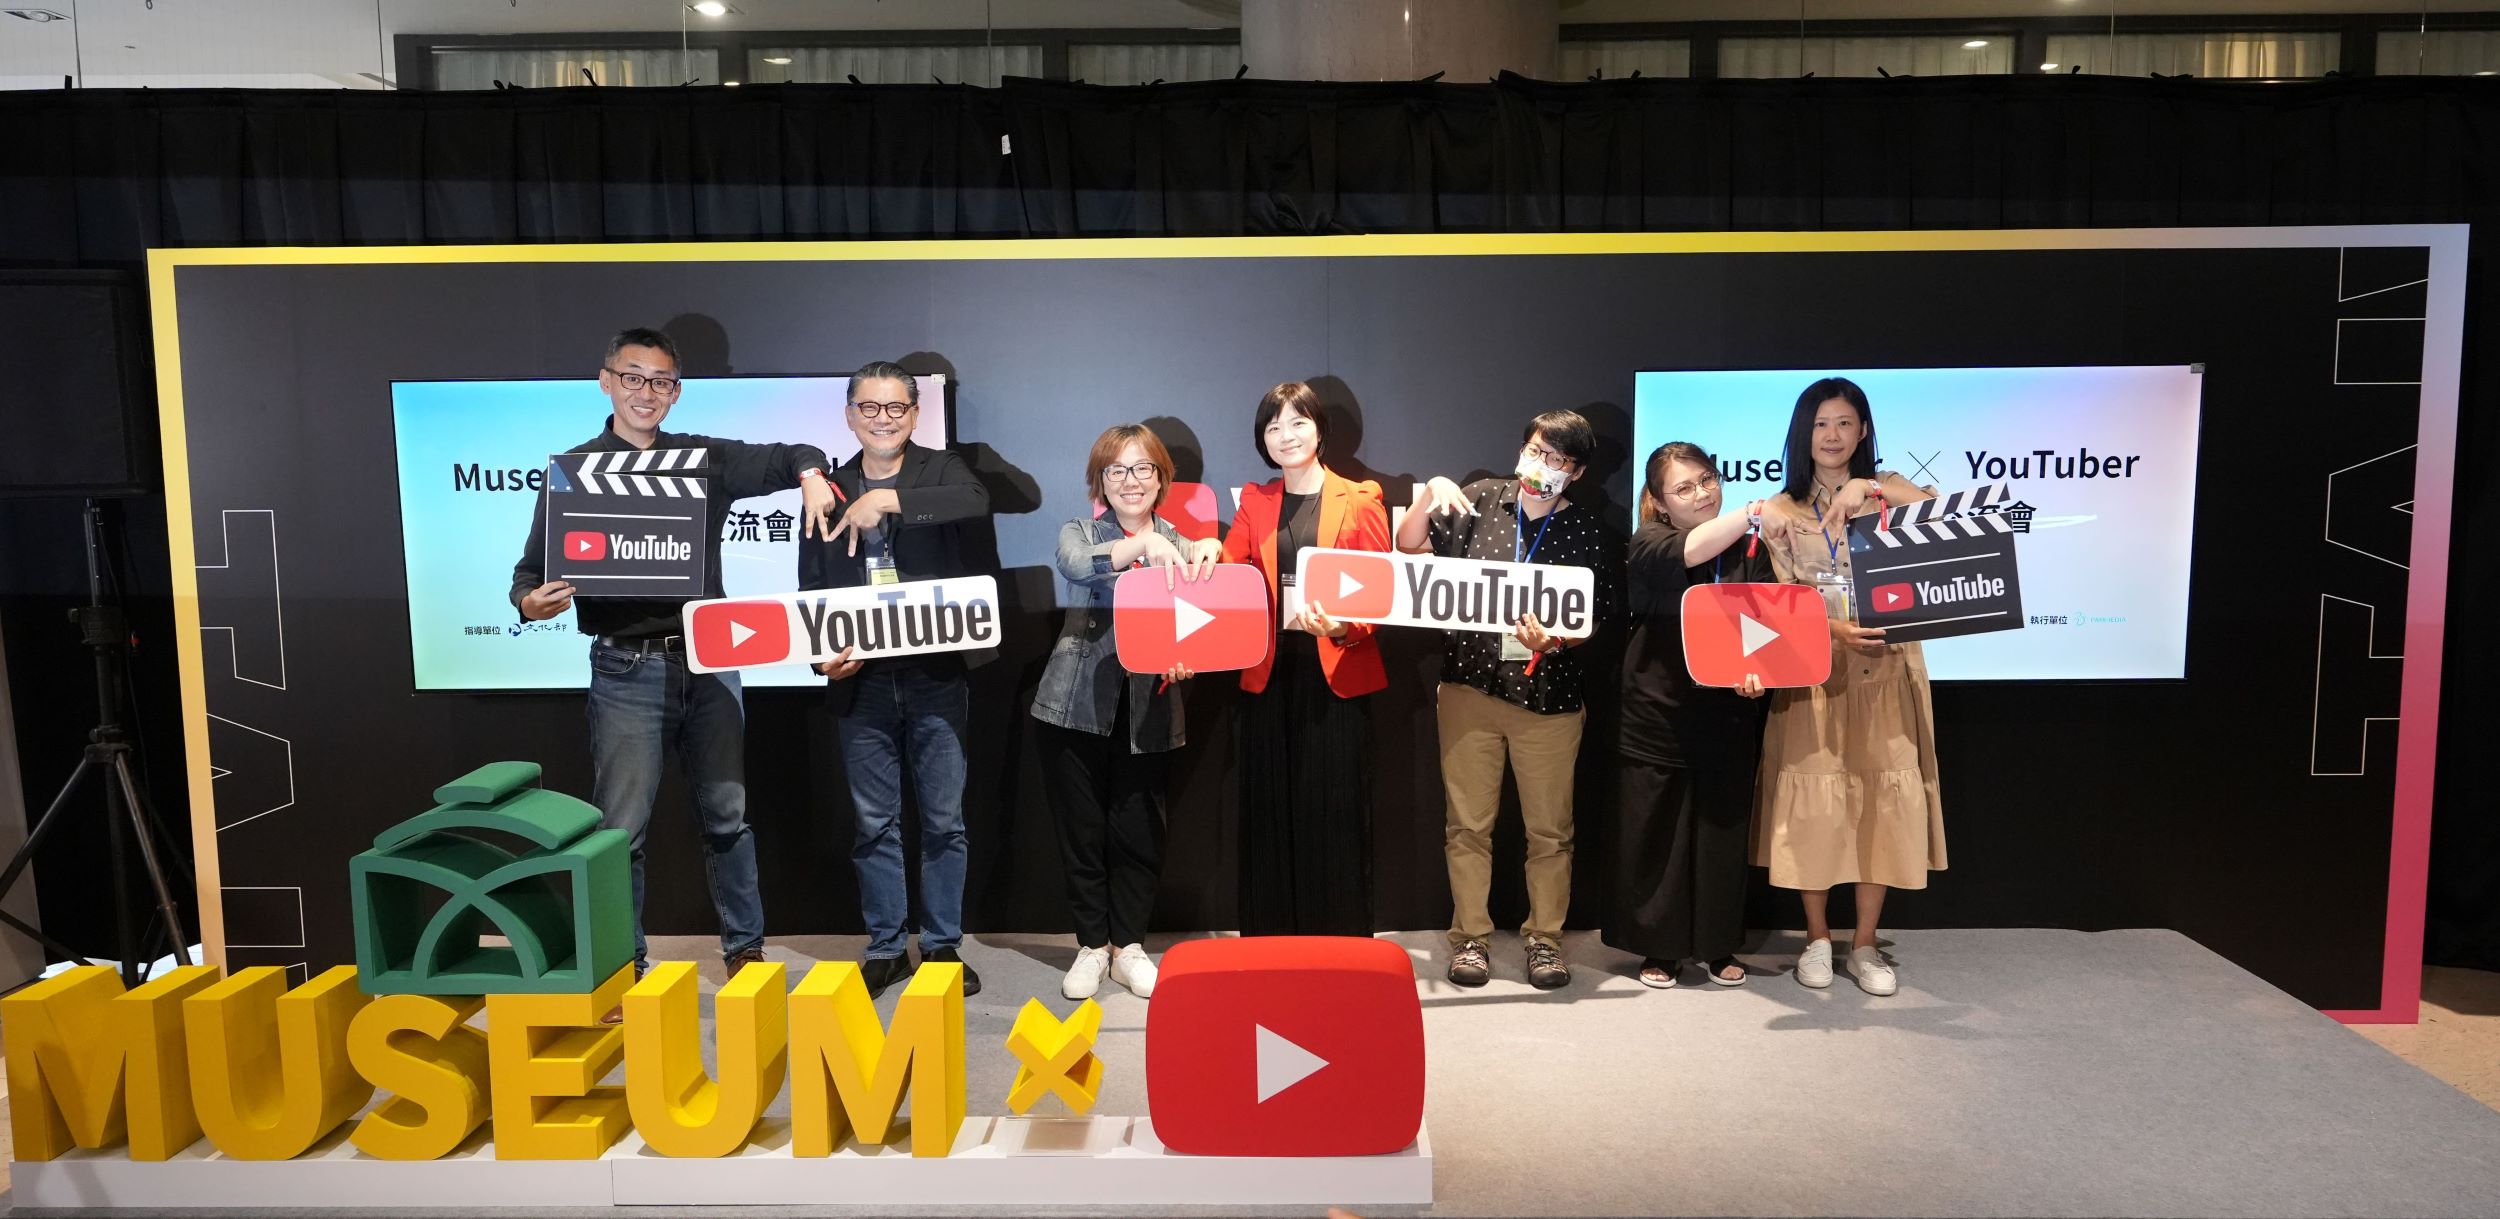 Giao lưu sáng tạo liên ngành 'Museumer x YouTuber': Nâng cao năng lực tiếp thị truyền thông mới cho nhân viên bảo tàng 